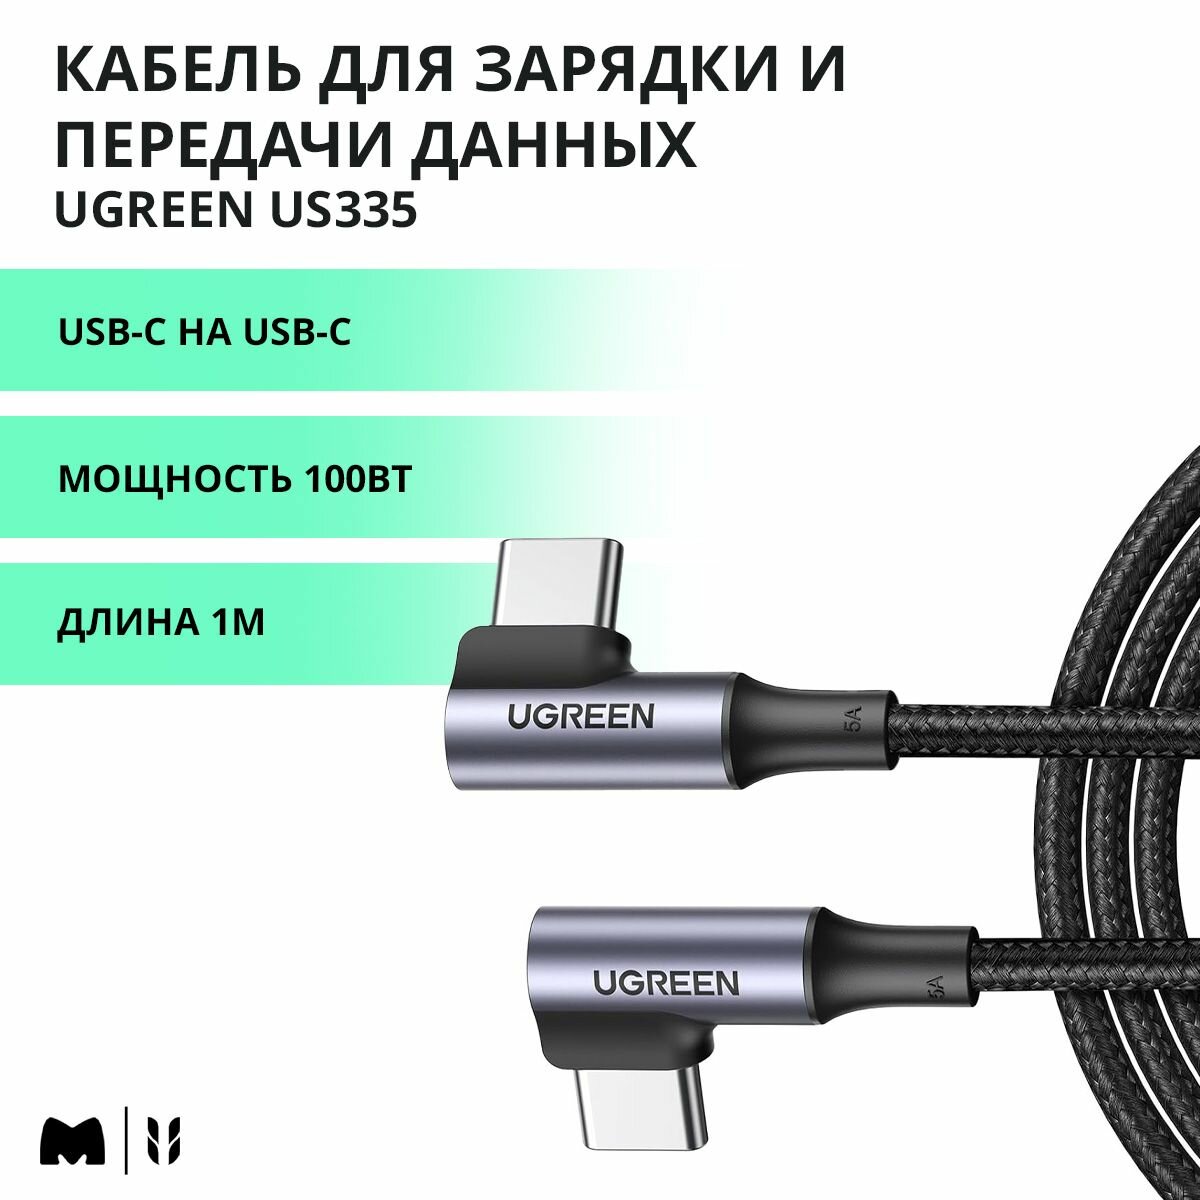 Кабель угловой для быстрой зарядки и передачи данных UGREEN US335 / USB-C на USB-C / PD 100Вт / Длина 1м / цвет серый (70696)